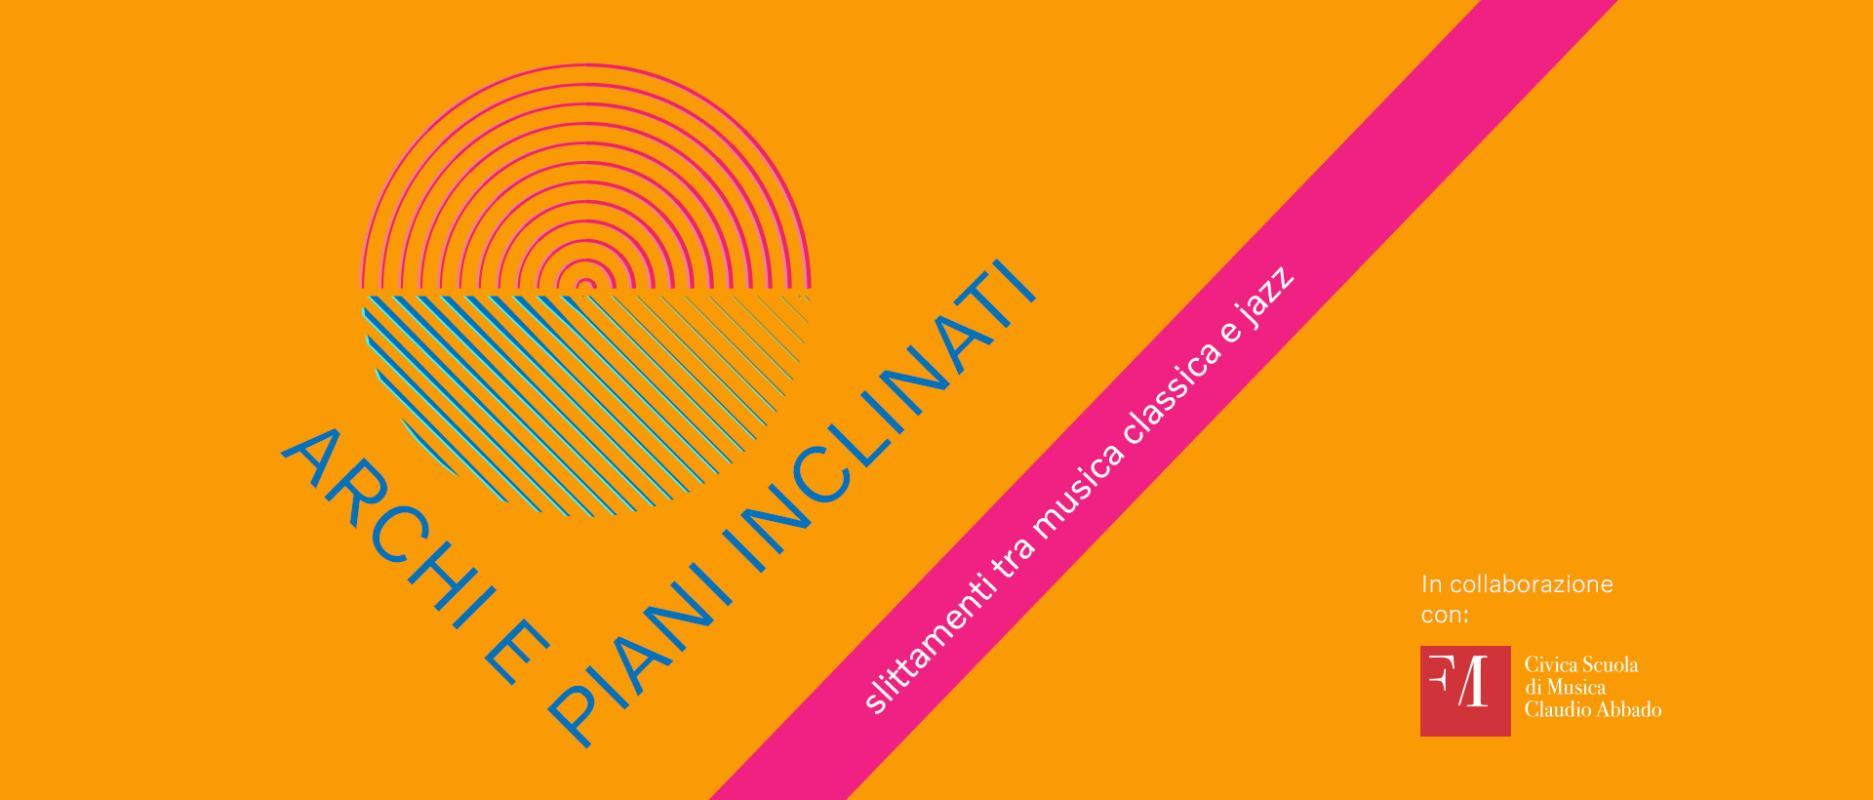 ARCHI E PIANI INCLINATI - La Civica Scuola di Musica Claudio Abbado